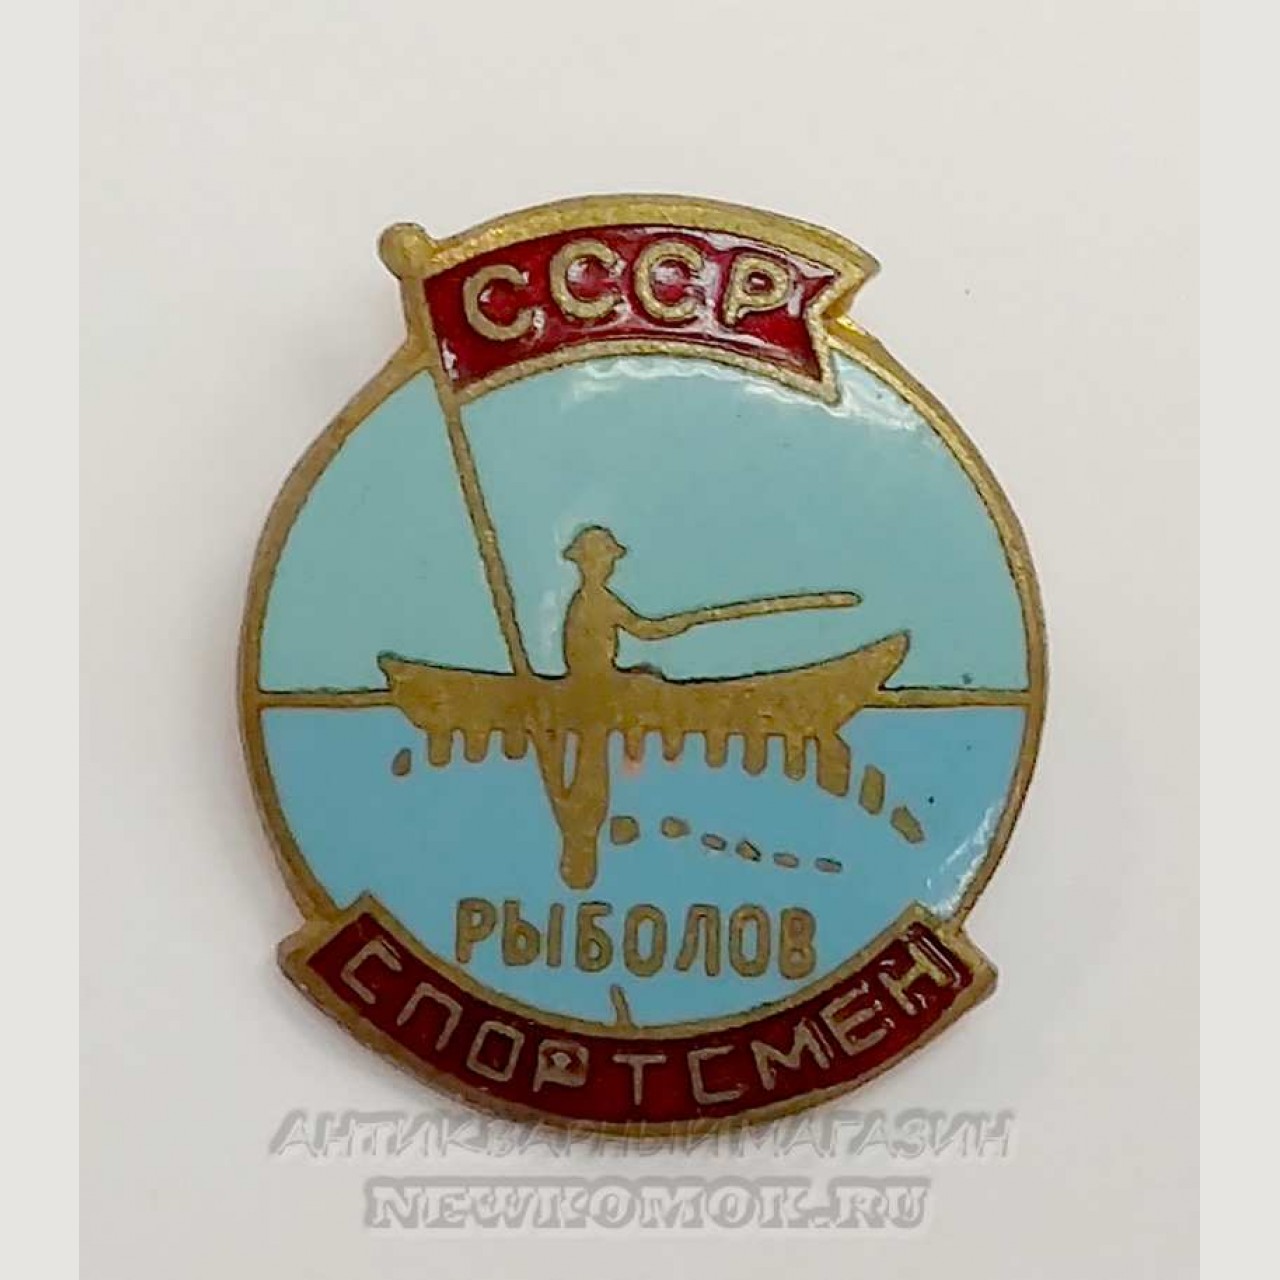 Значок советского периода, Рыболов спортсмен, СССР, Бронза, эмаль,антикварный магазин